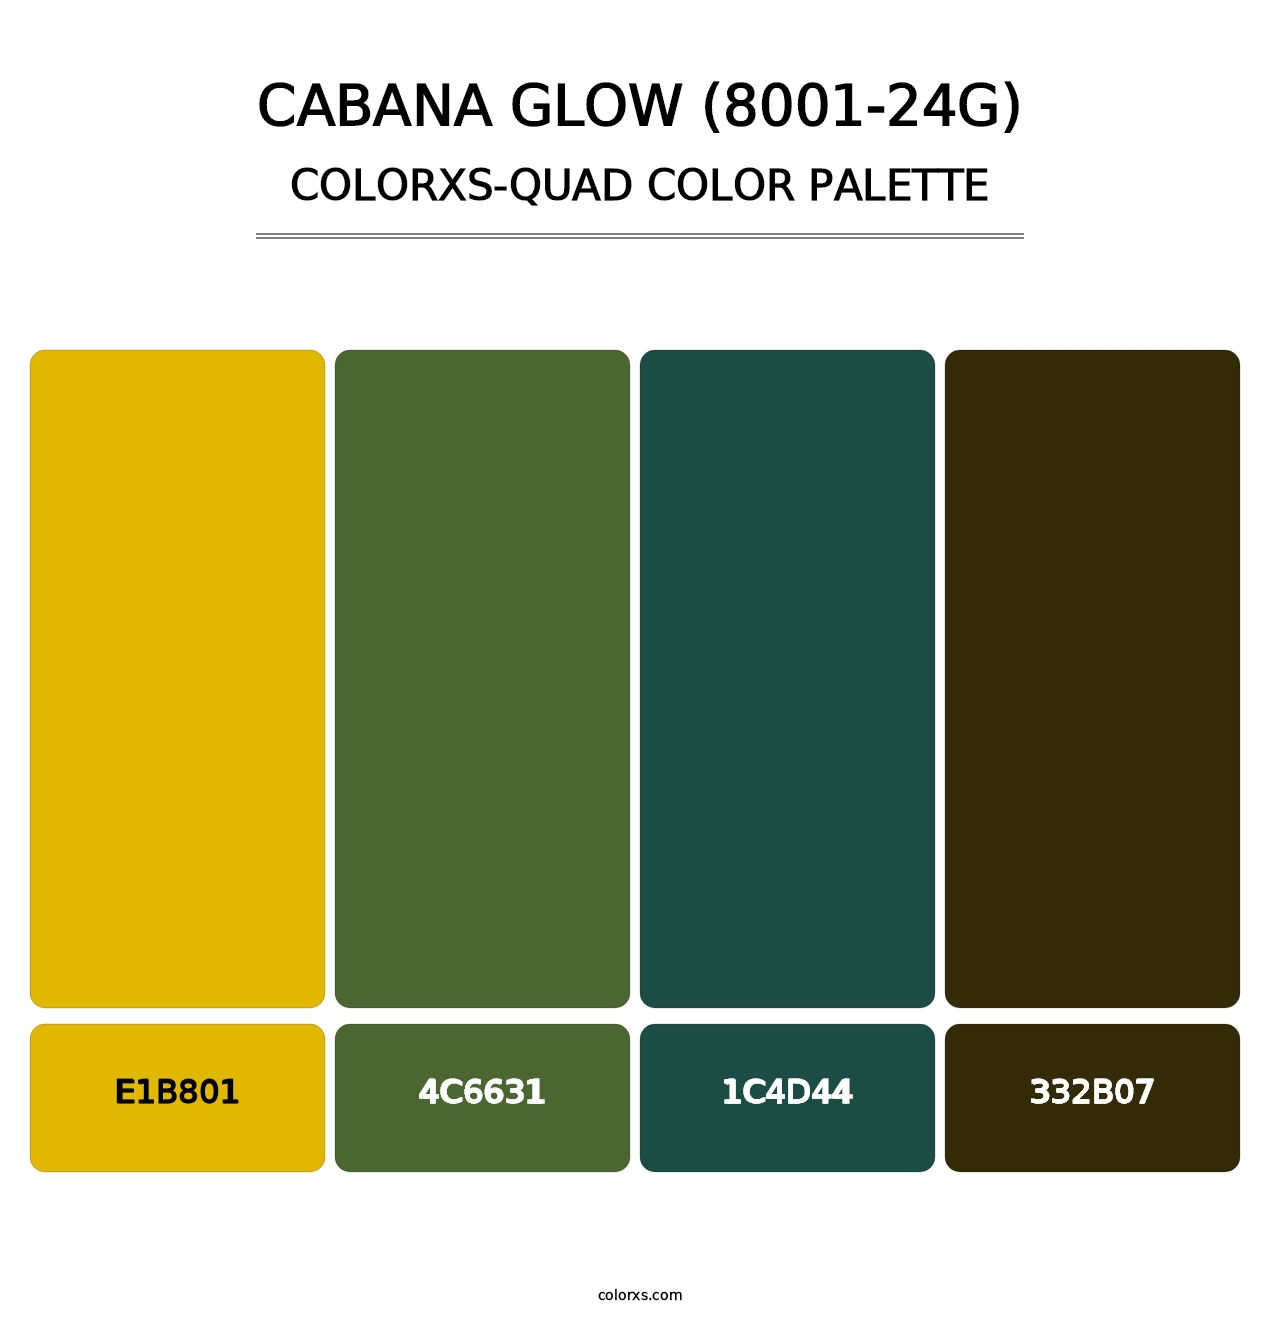 Cabana Glow (8001-24G) - Colorxs Quad Palette